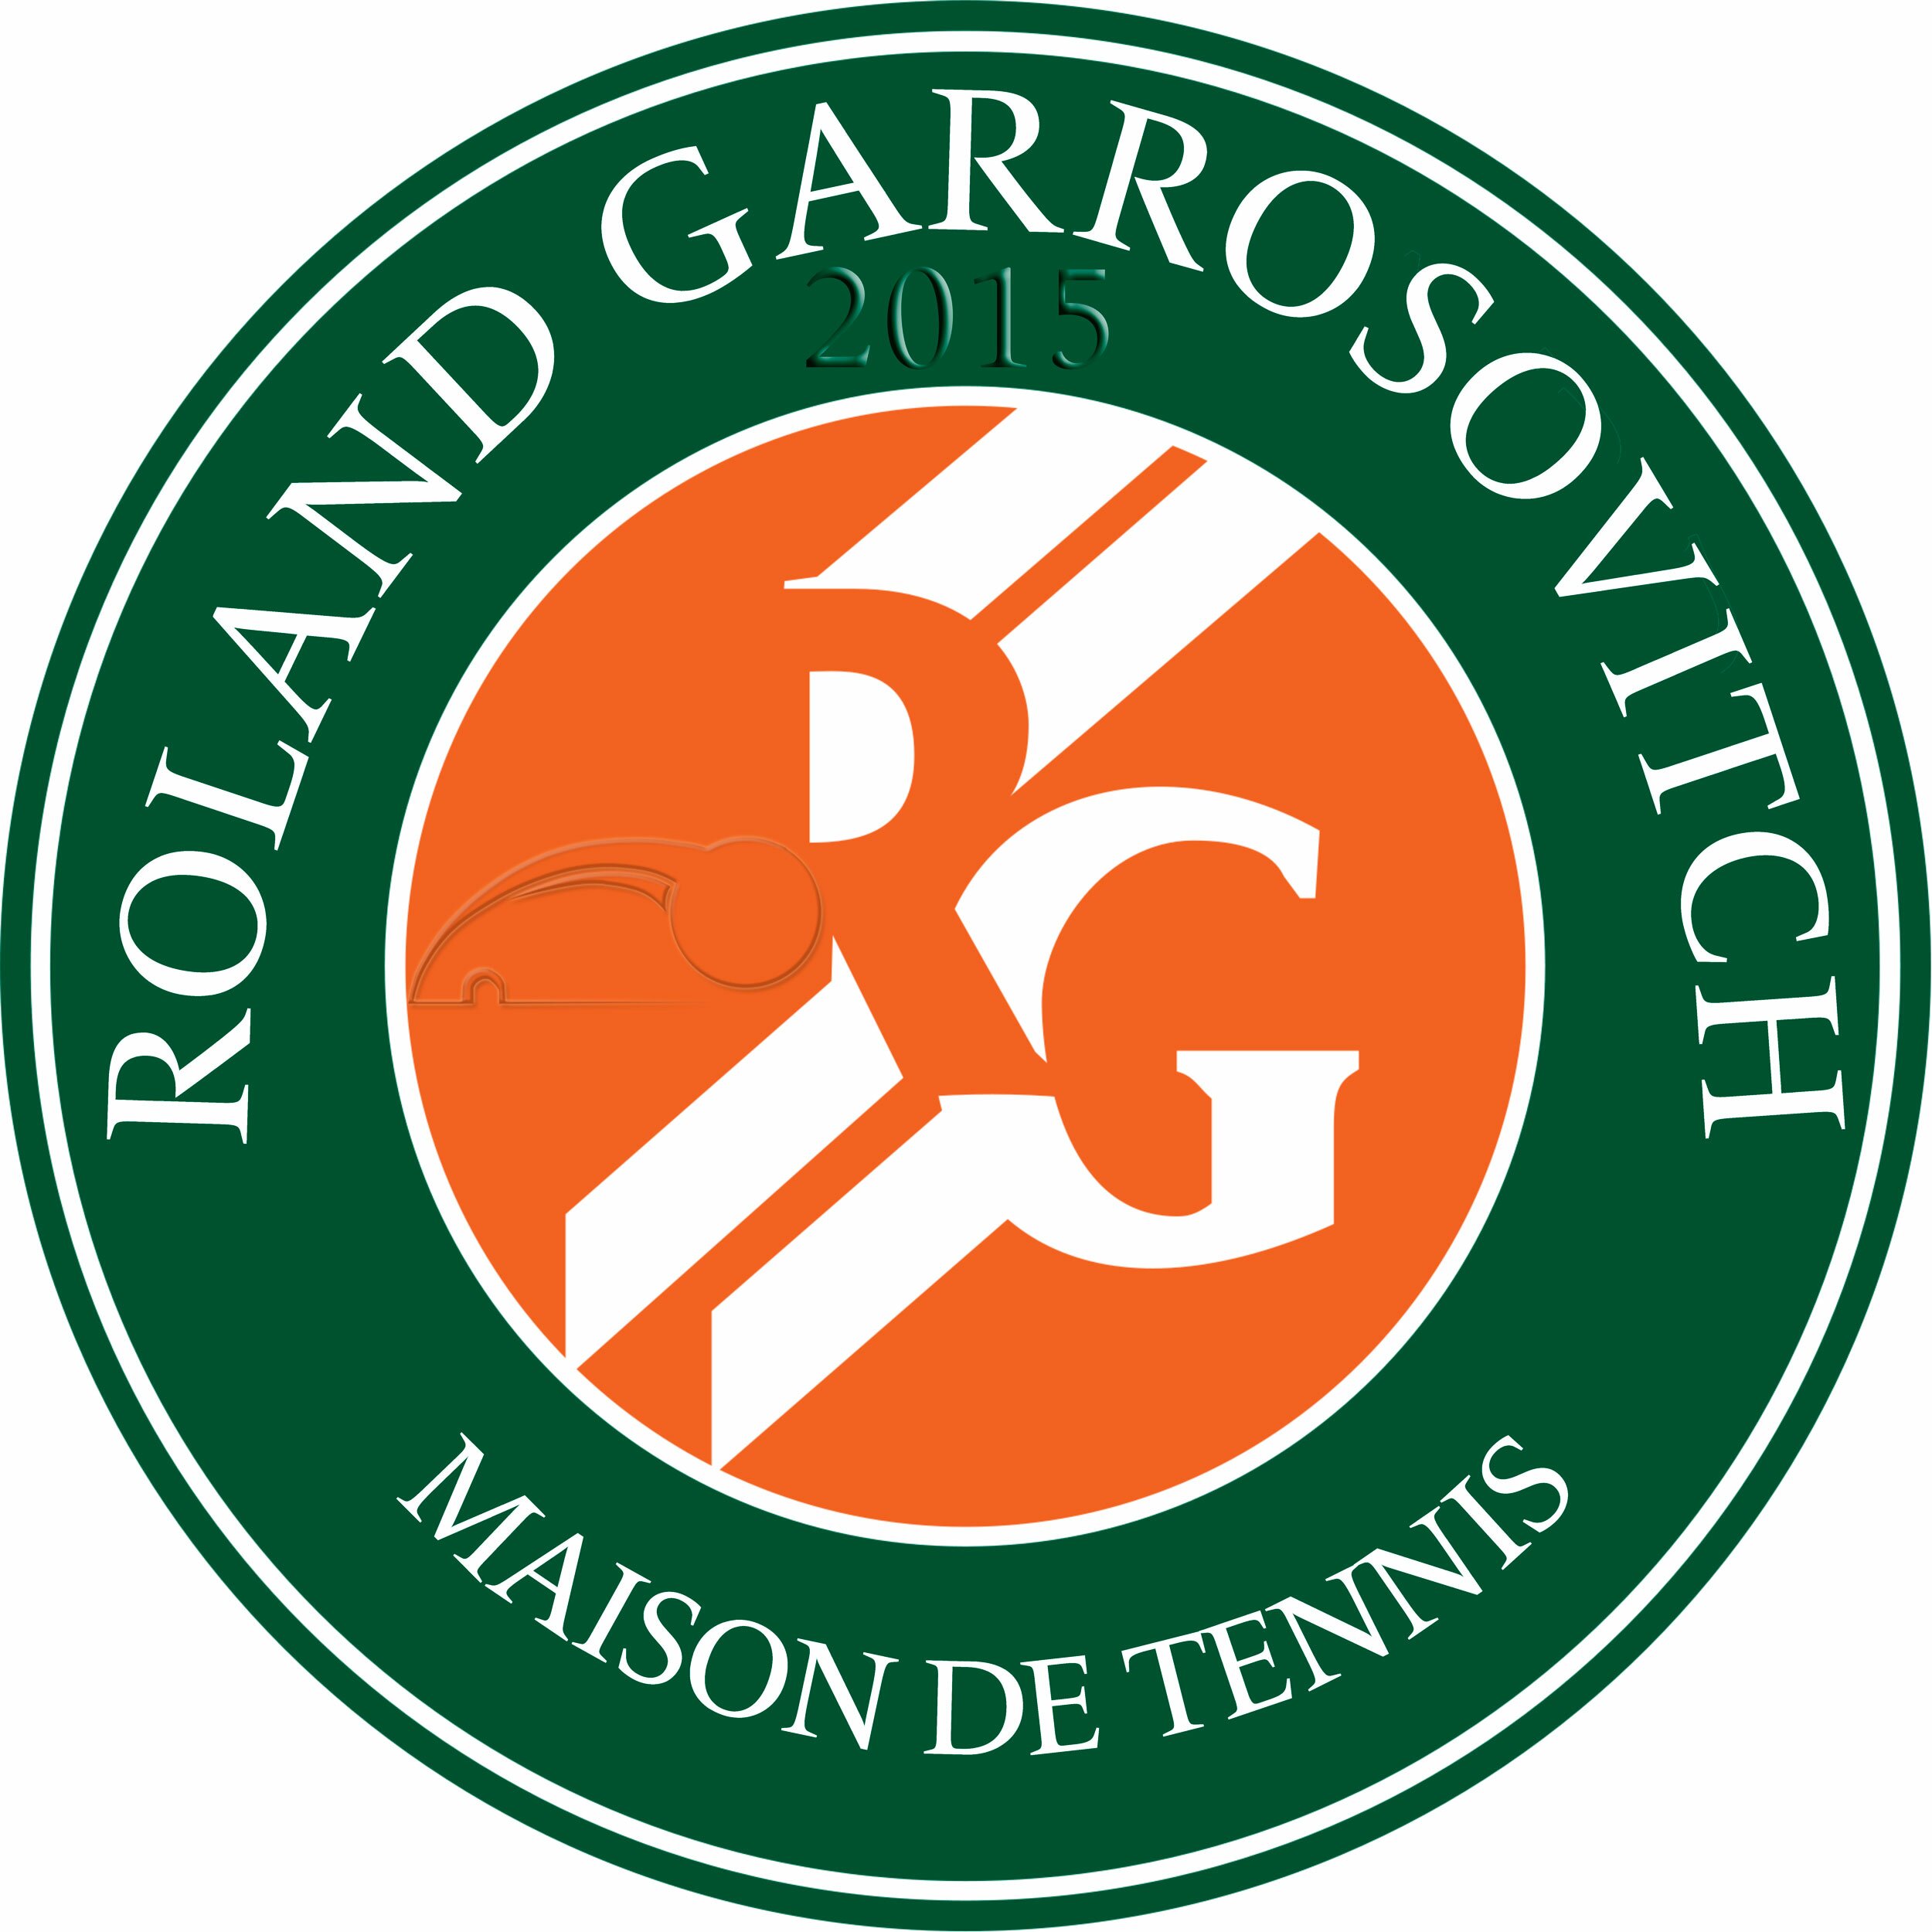 Логотип турнира